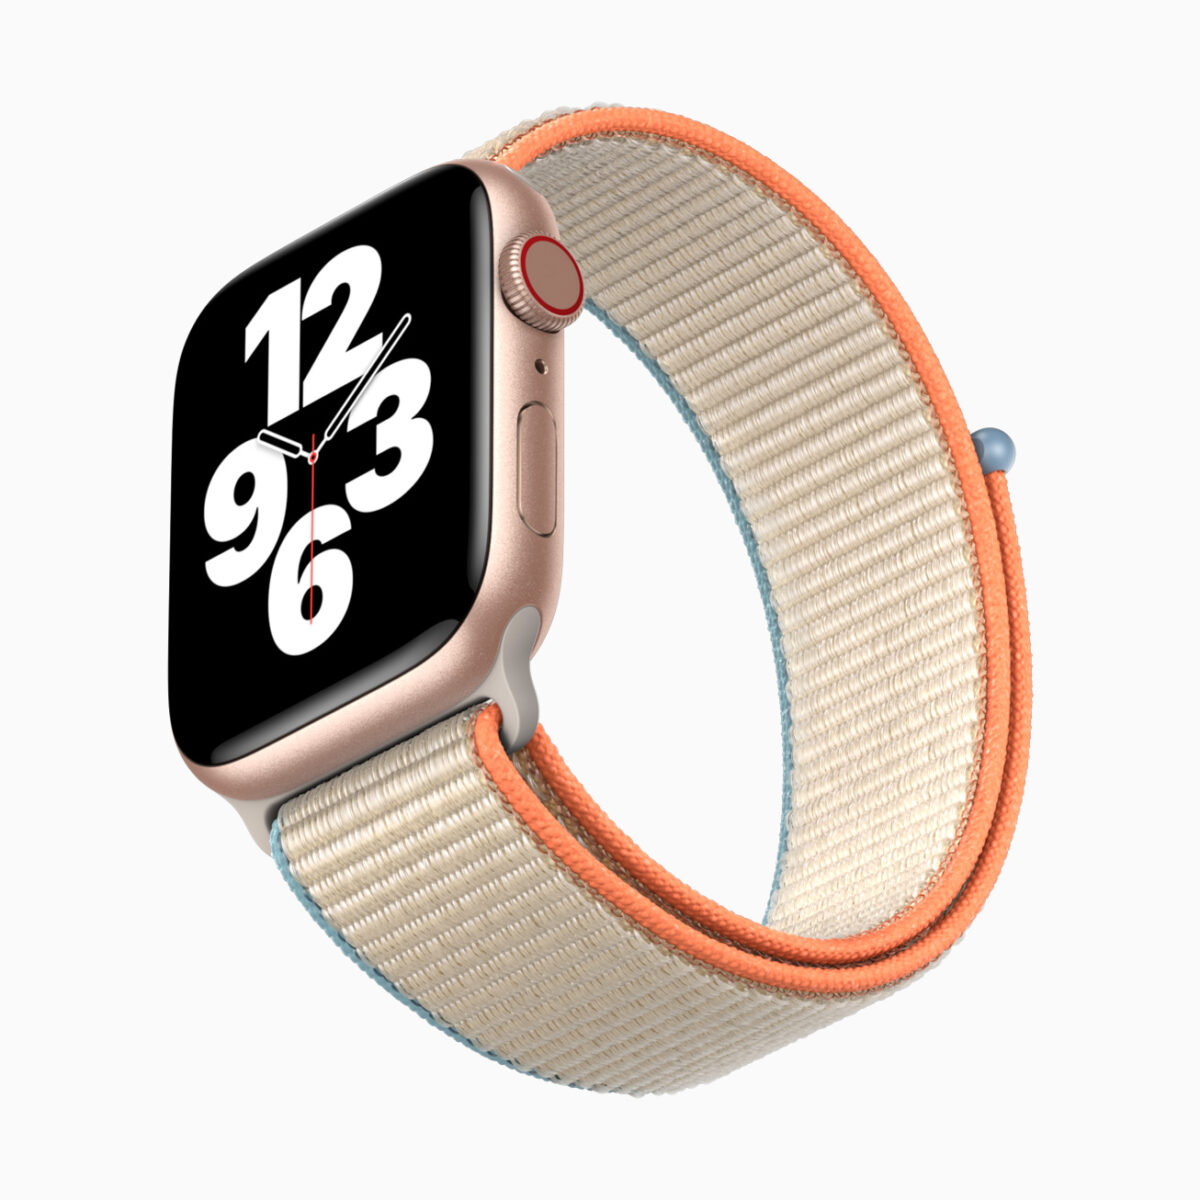 Apple Watch SE: tutto quello da sapere